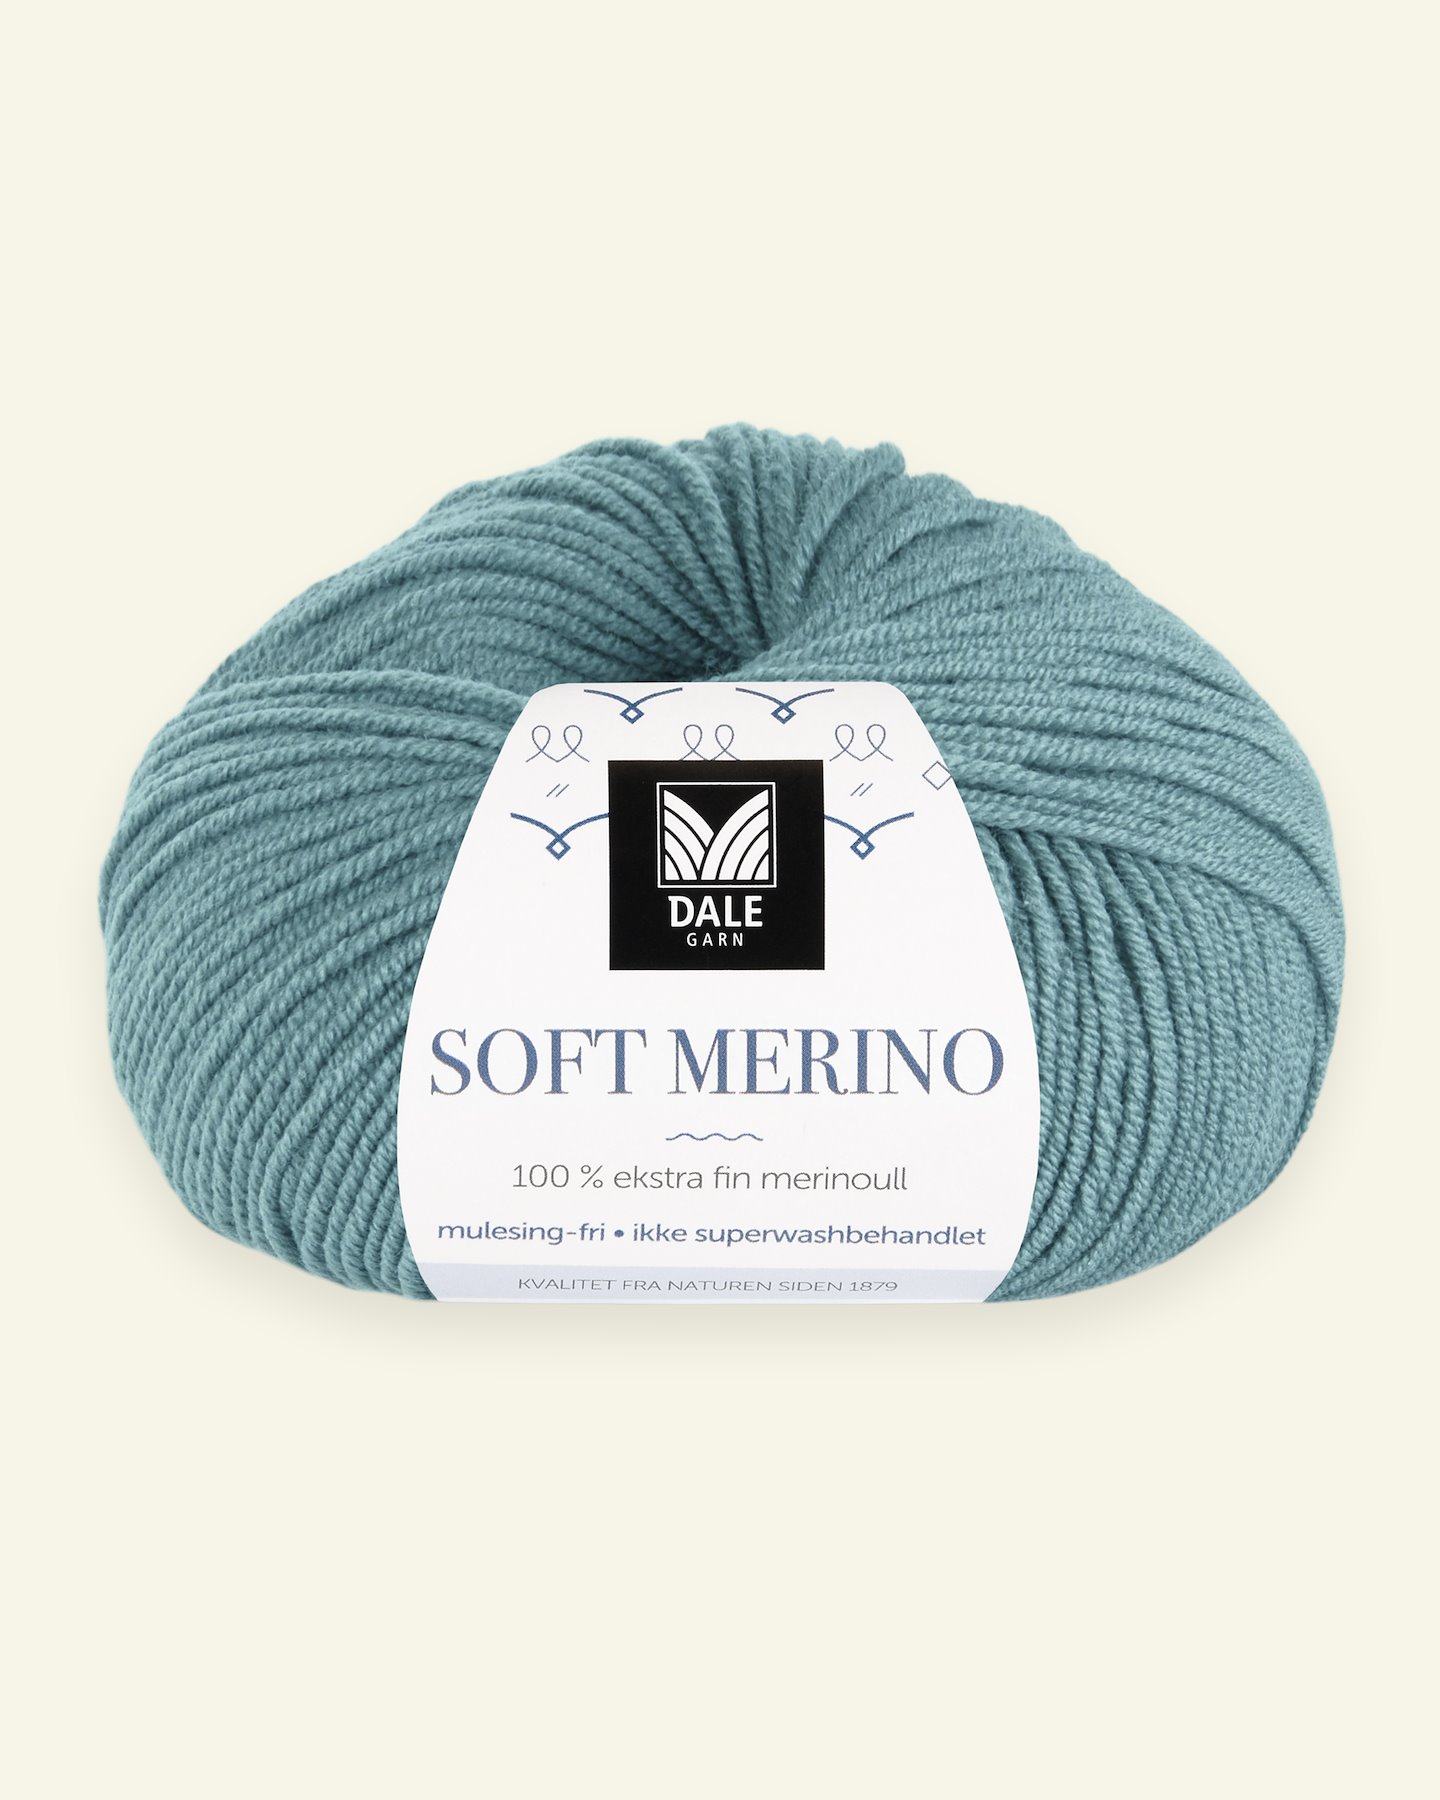 Dale Garn, 100% extra fine merino wool yarn, "Soft Merino", aqua (3012) 90000333_pack